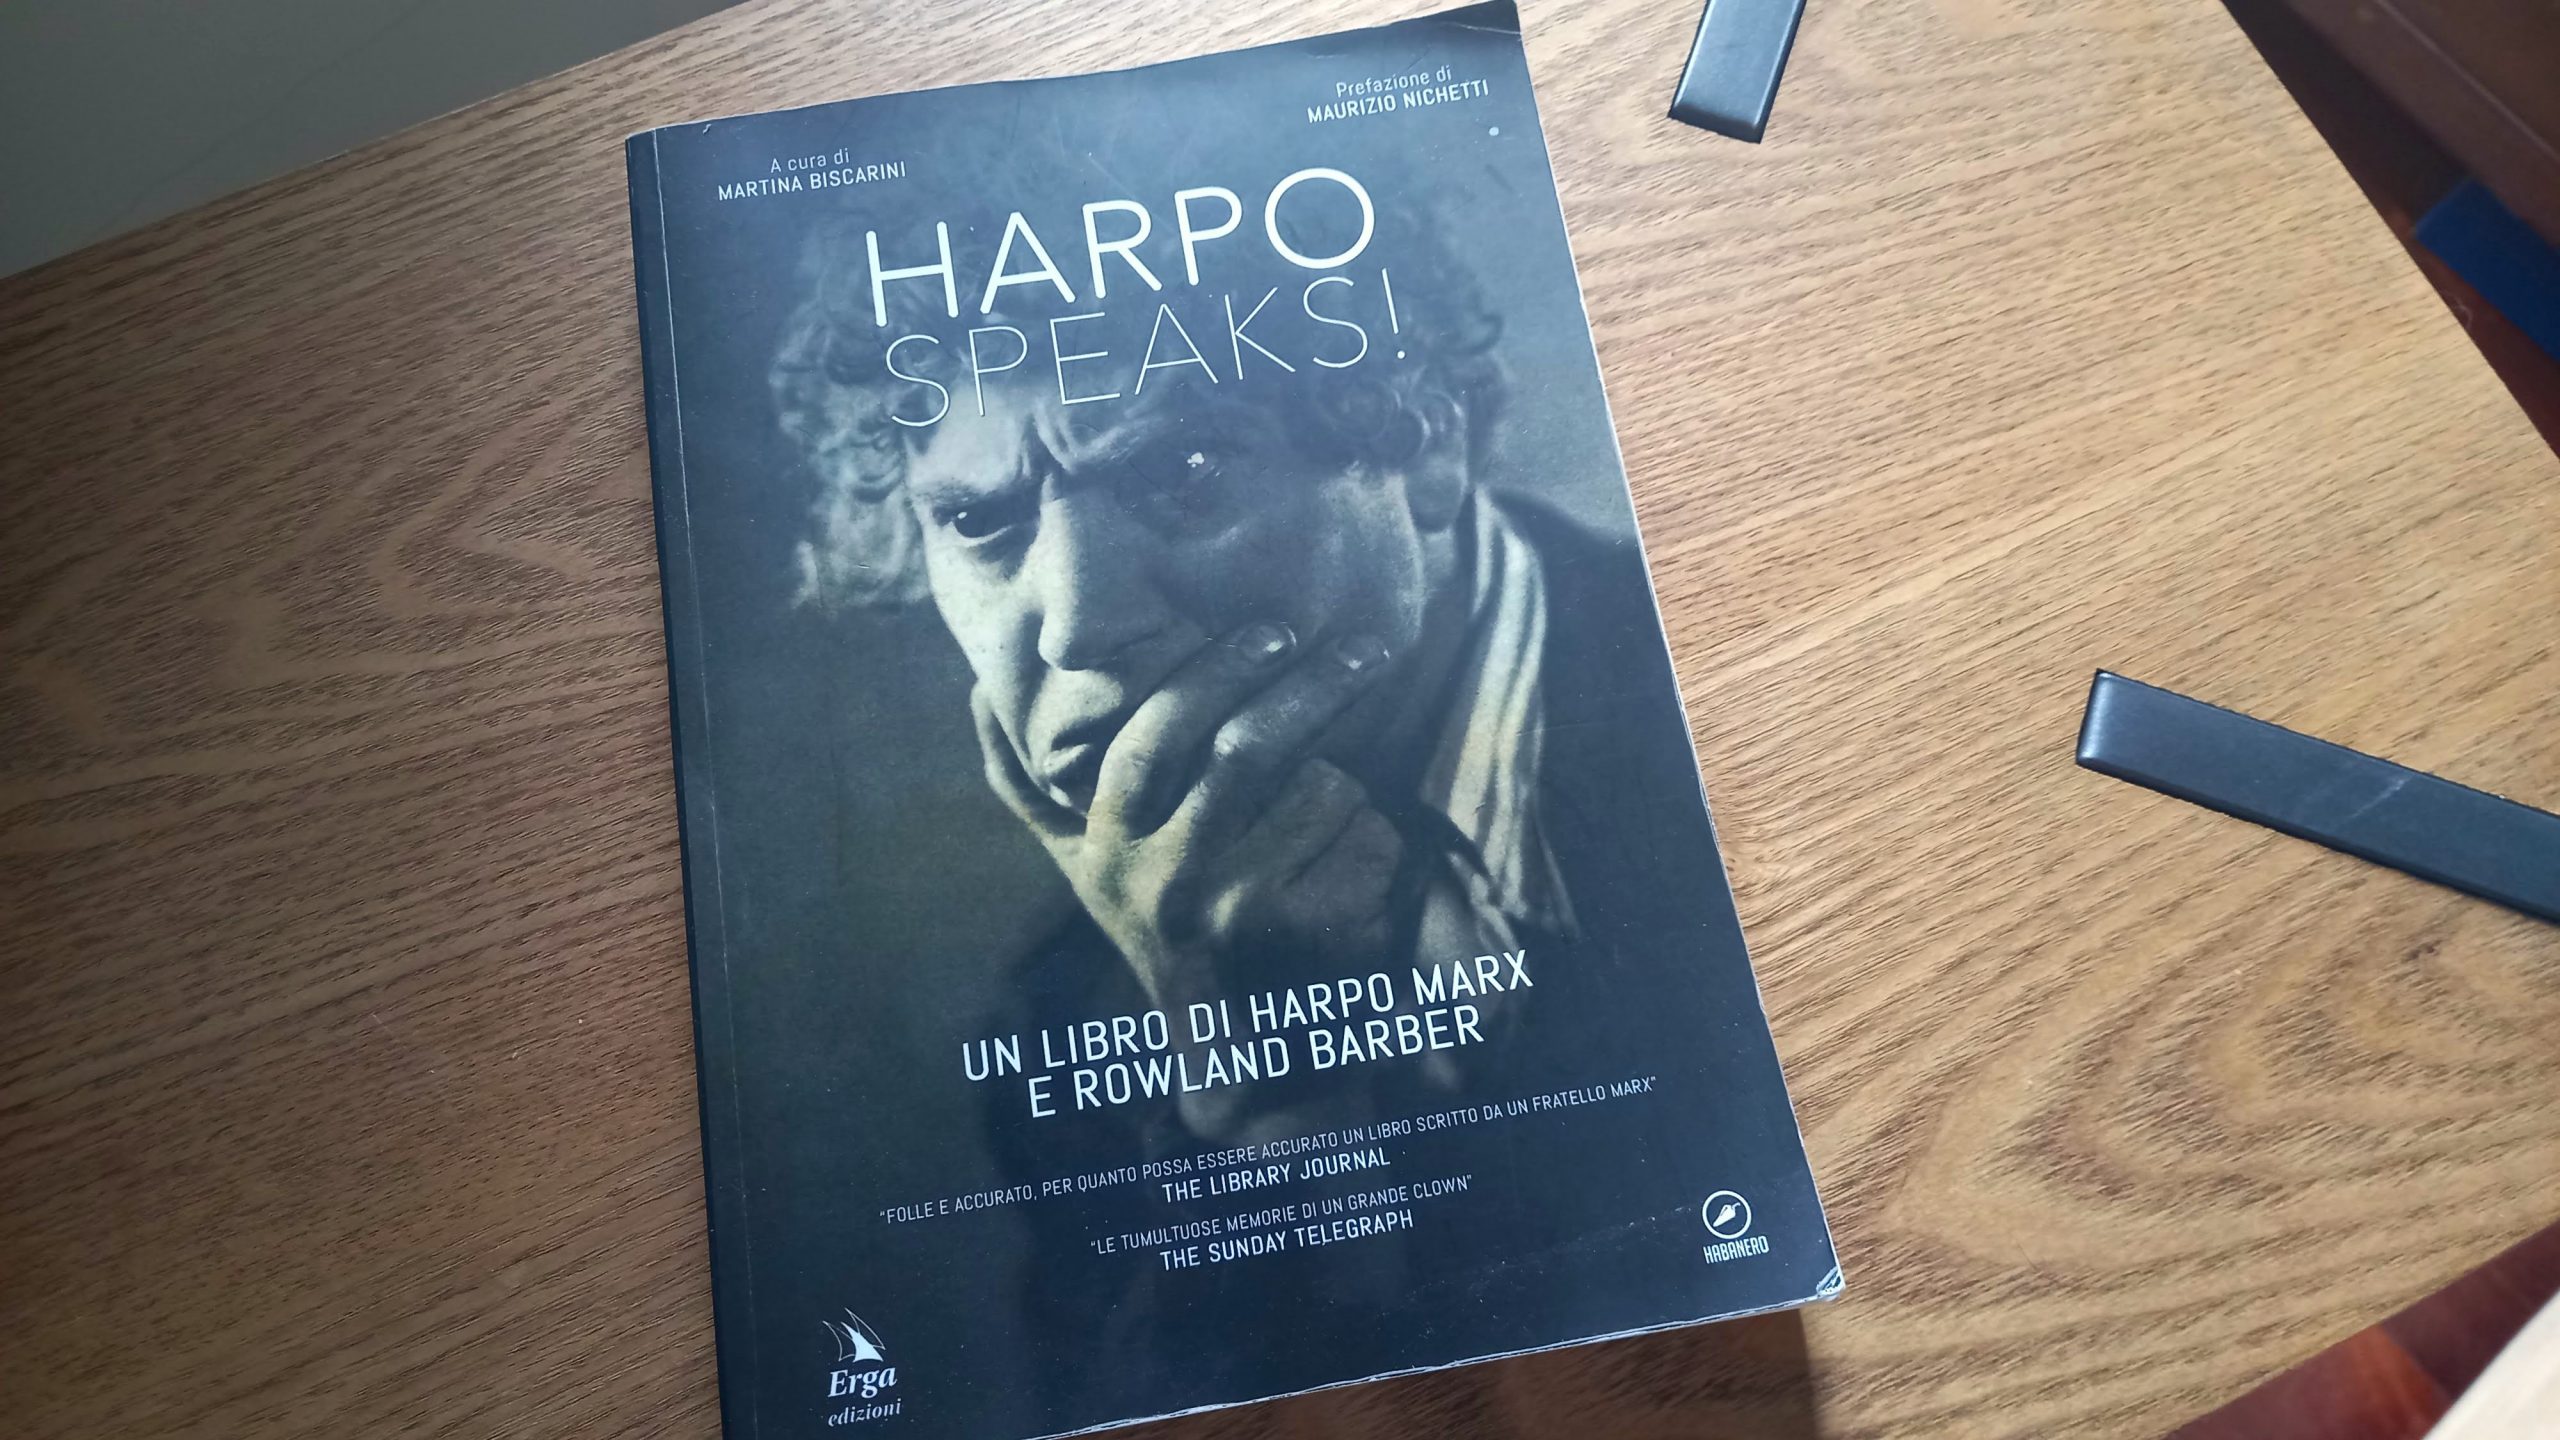 Il libro "Harpo Speaks" in cui l'autore parla della sua storia e del gioco Pinnacolo